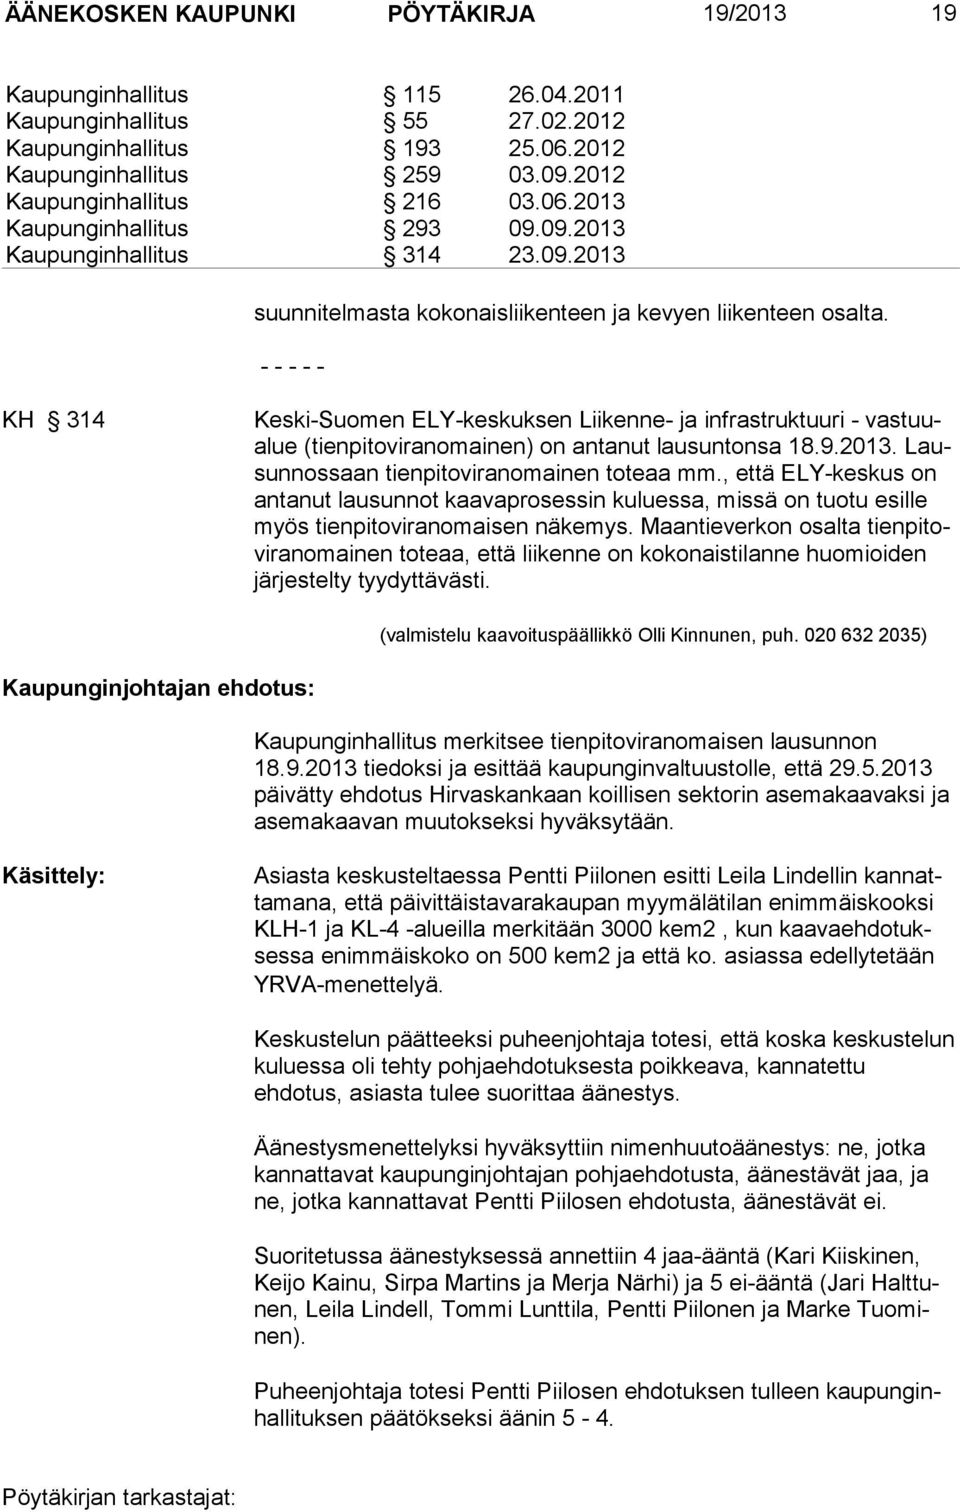 KH 314 Keski-Suomen ELY-keskuksen Liikenne- ja infrastruktuuri - vastuualue (tienpitoviranomainen) on antanut lausuntonsa 18.9.2013. Lausunnossaan tienpitoviranomainen toteaa mm.